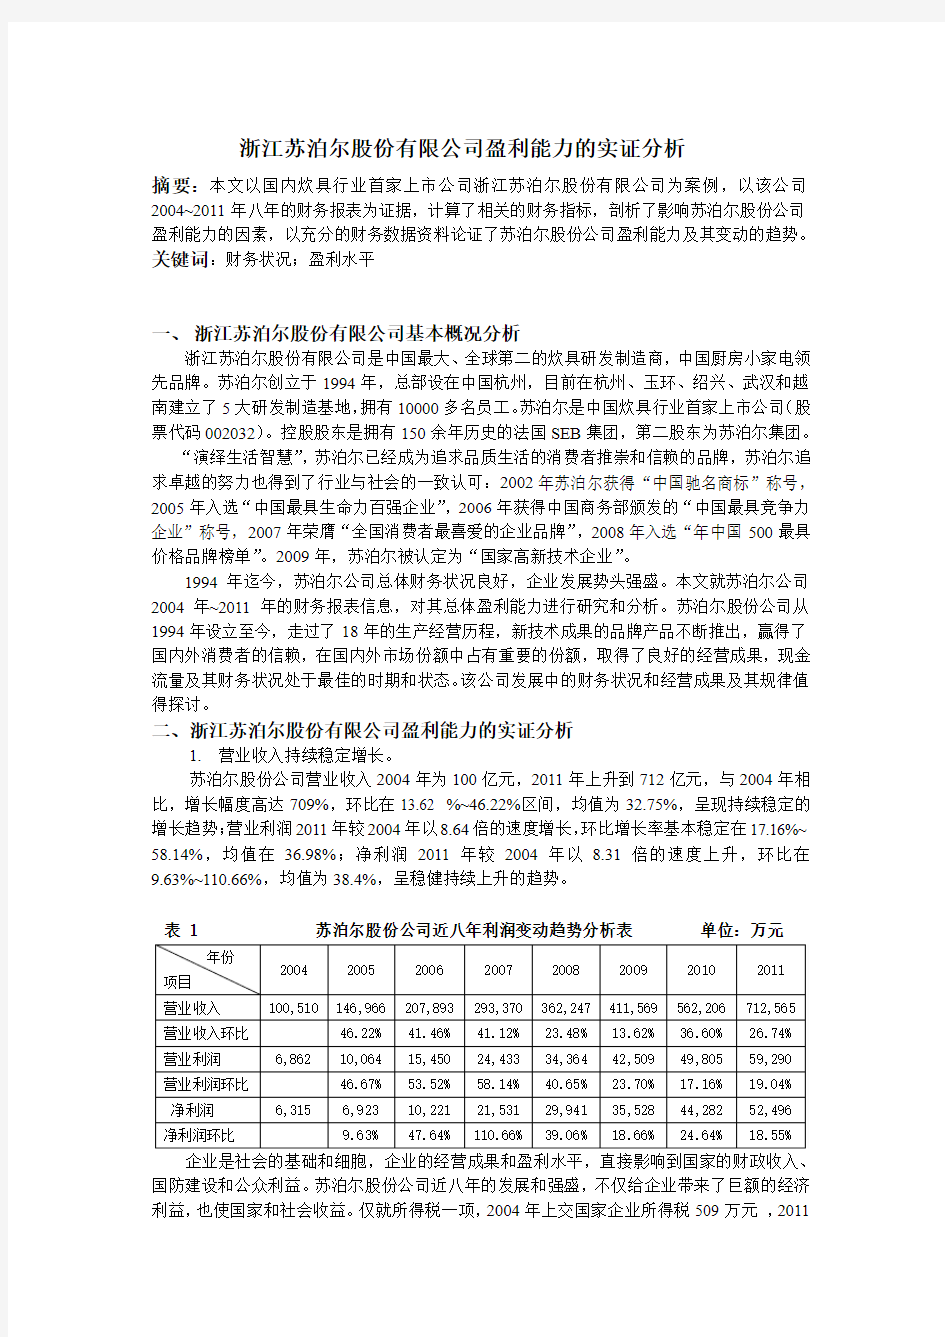 浙江苏泊尔股份有限公司盈利能力的实证分析